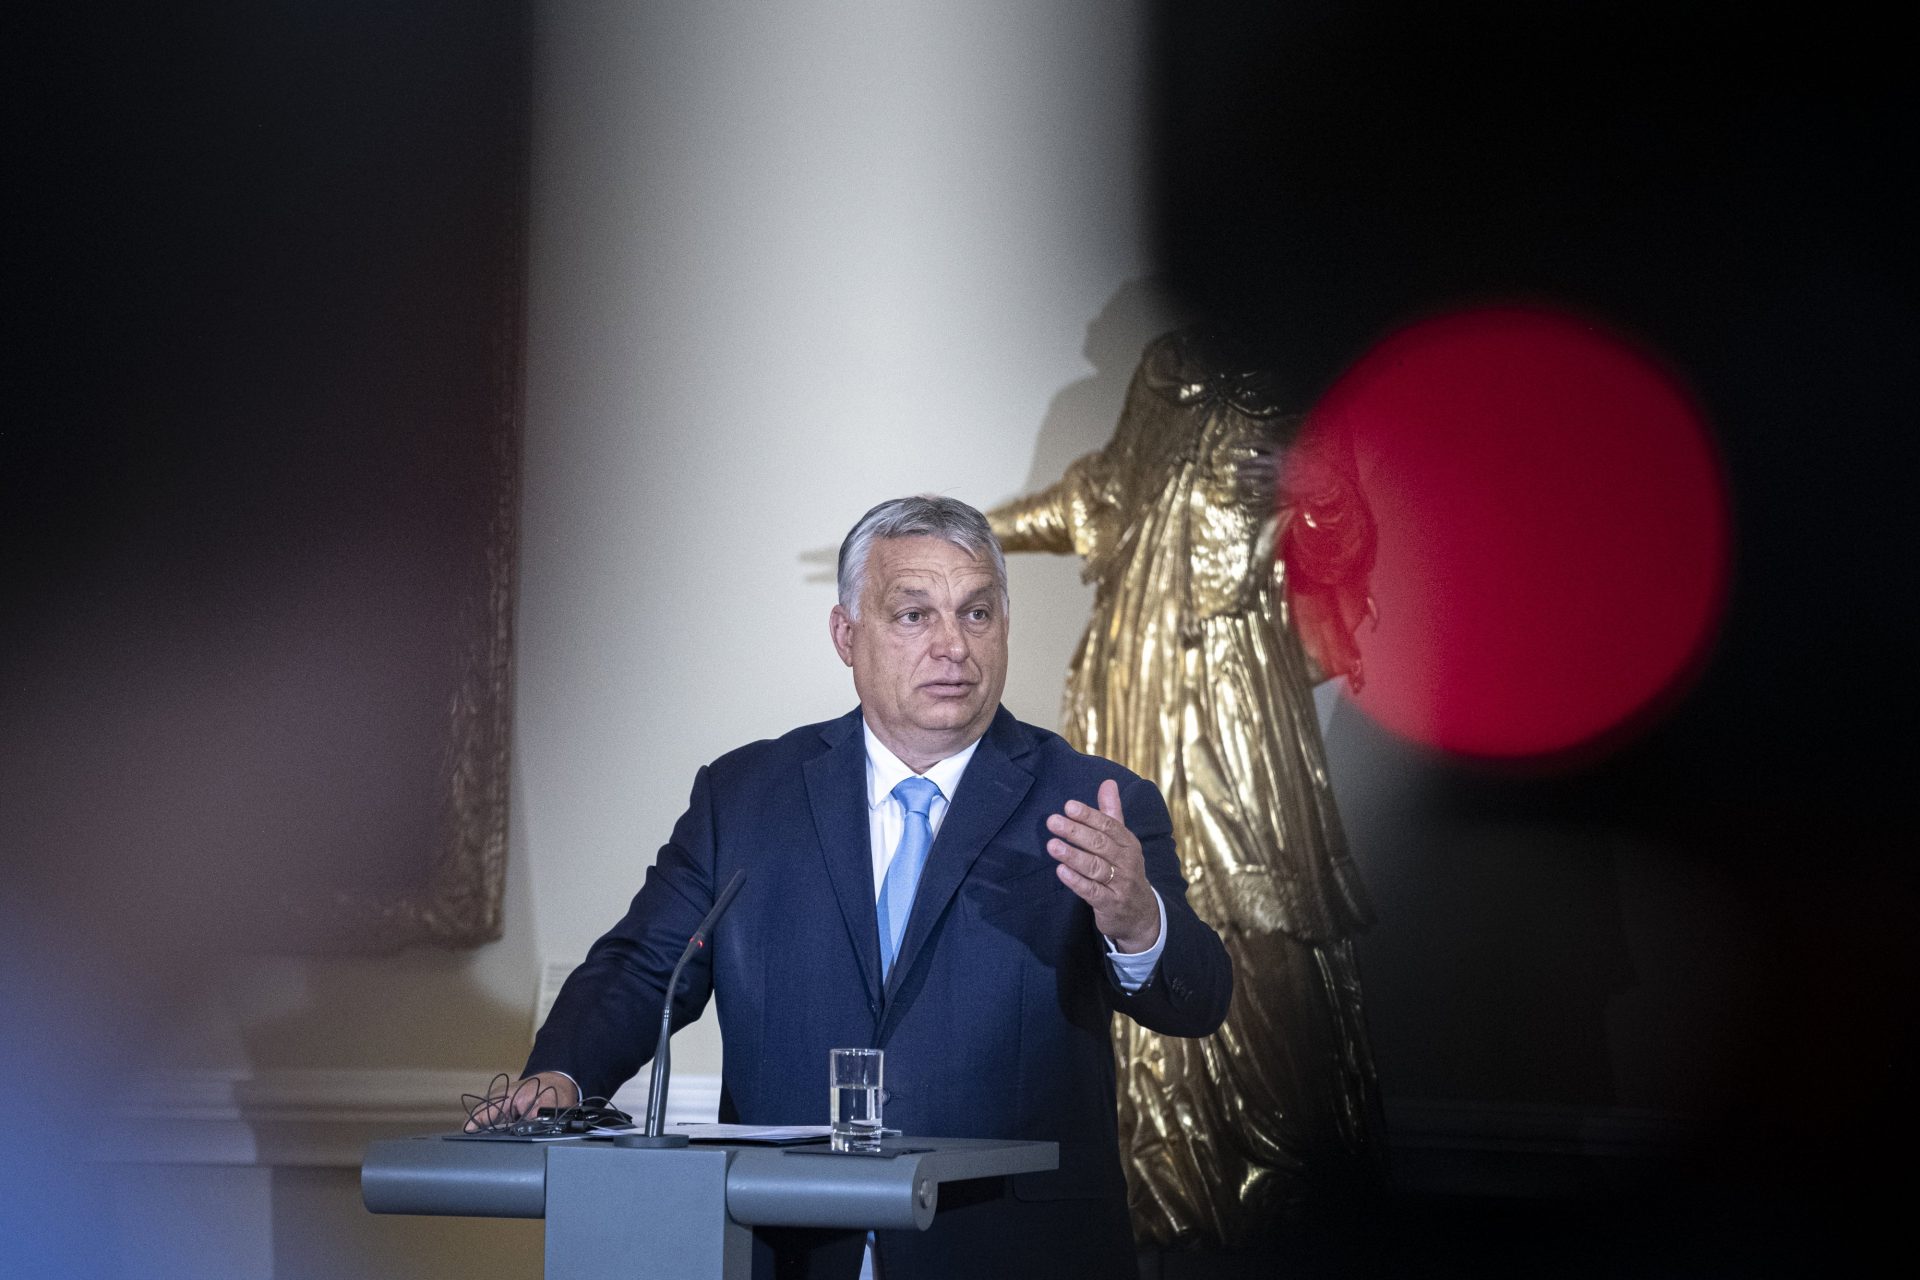 Szazadveg: Orbán more popular PM candidate than Karacsony